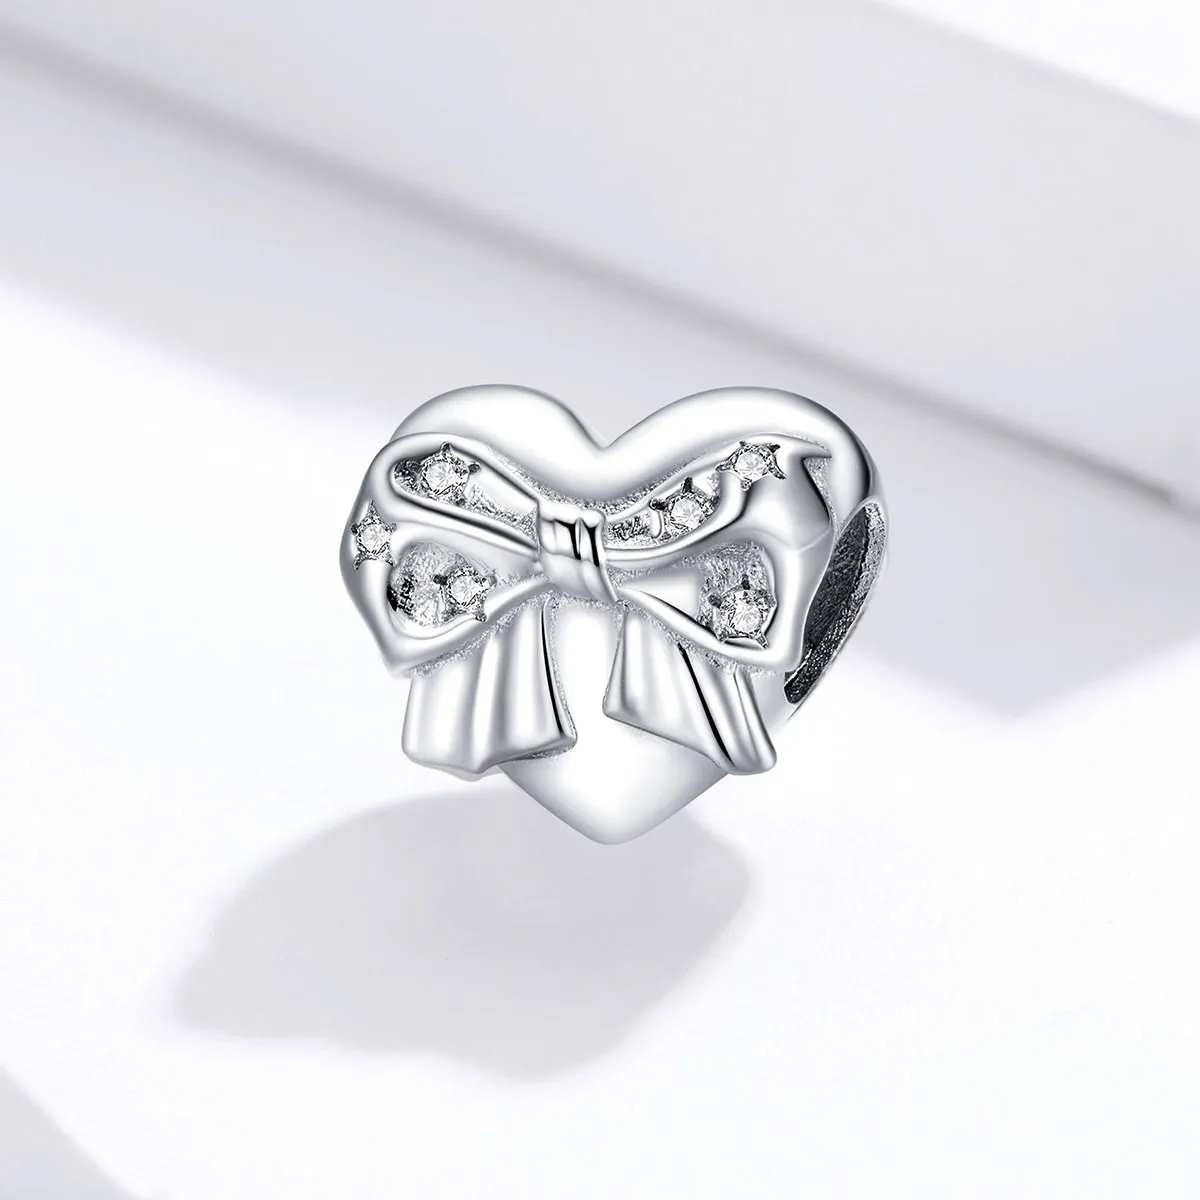 Talisman Tip Pandora Bow & Love Heart din argint - BSC381